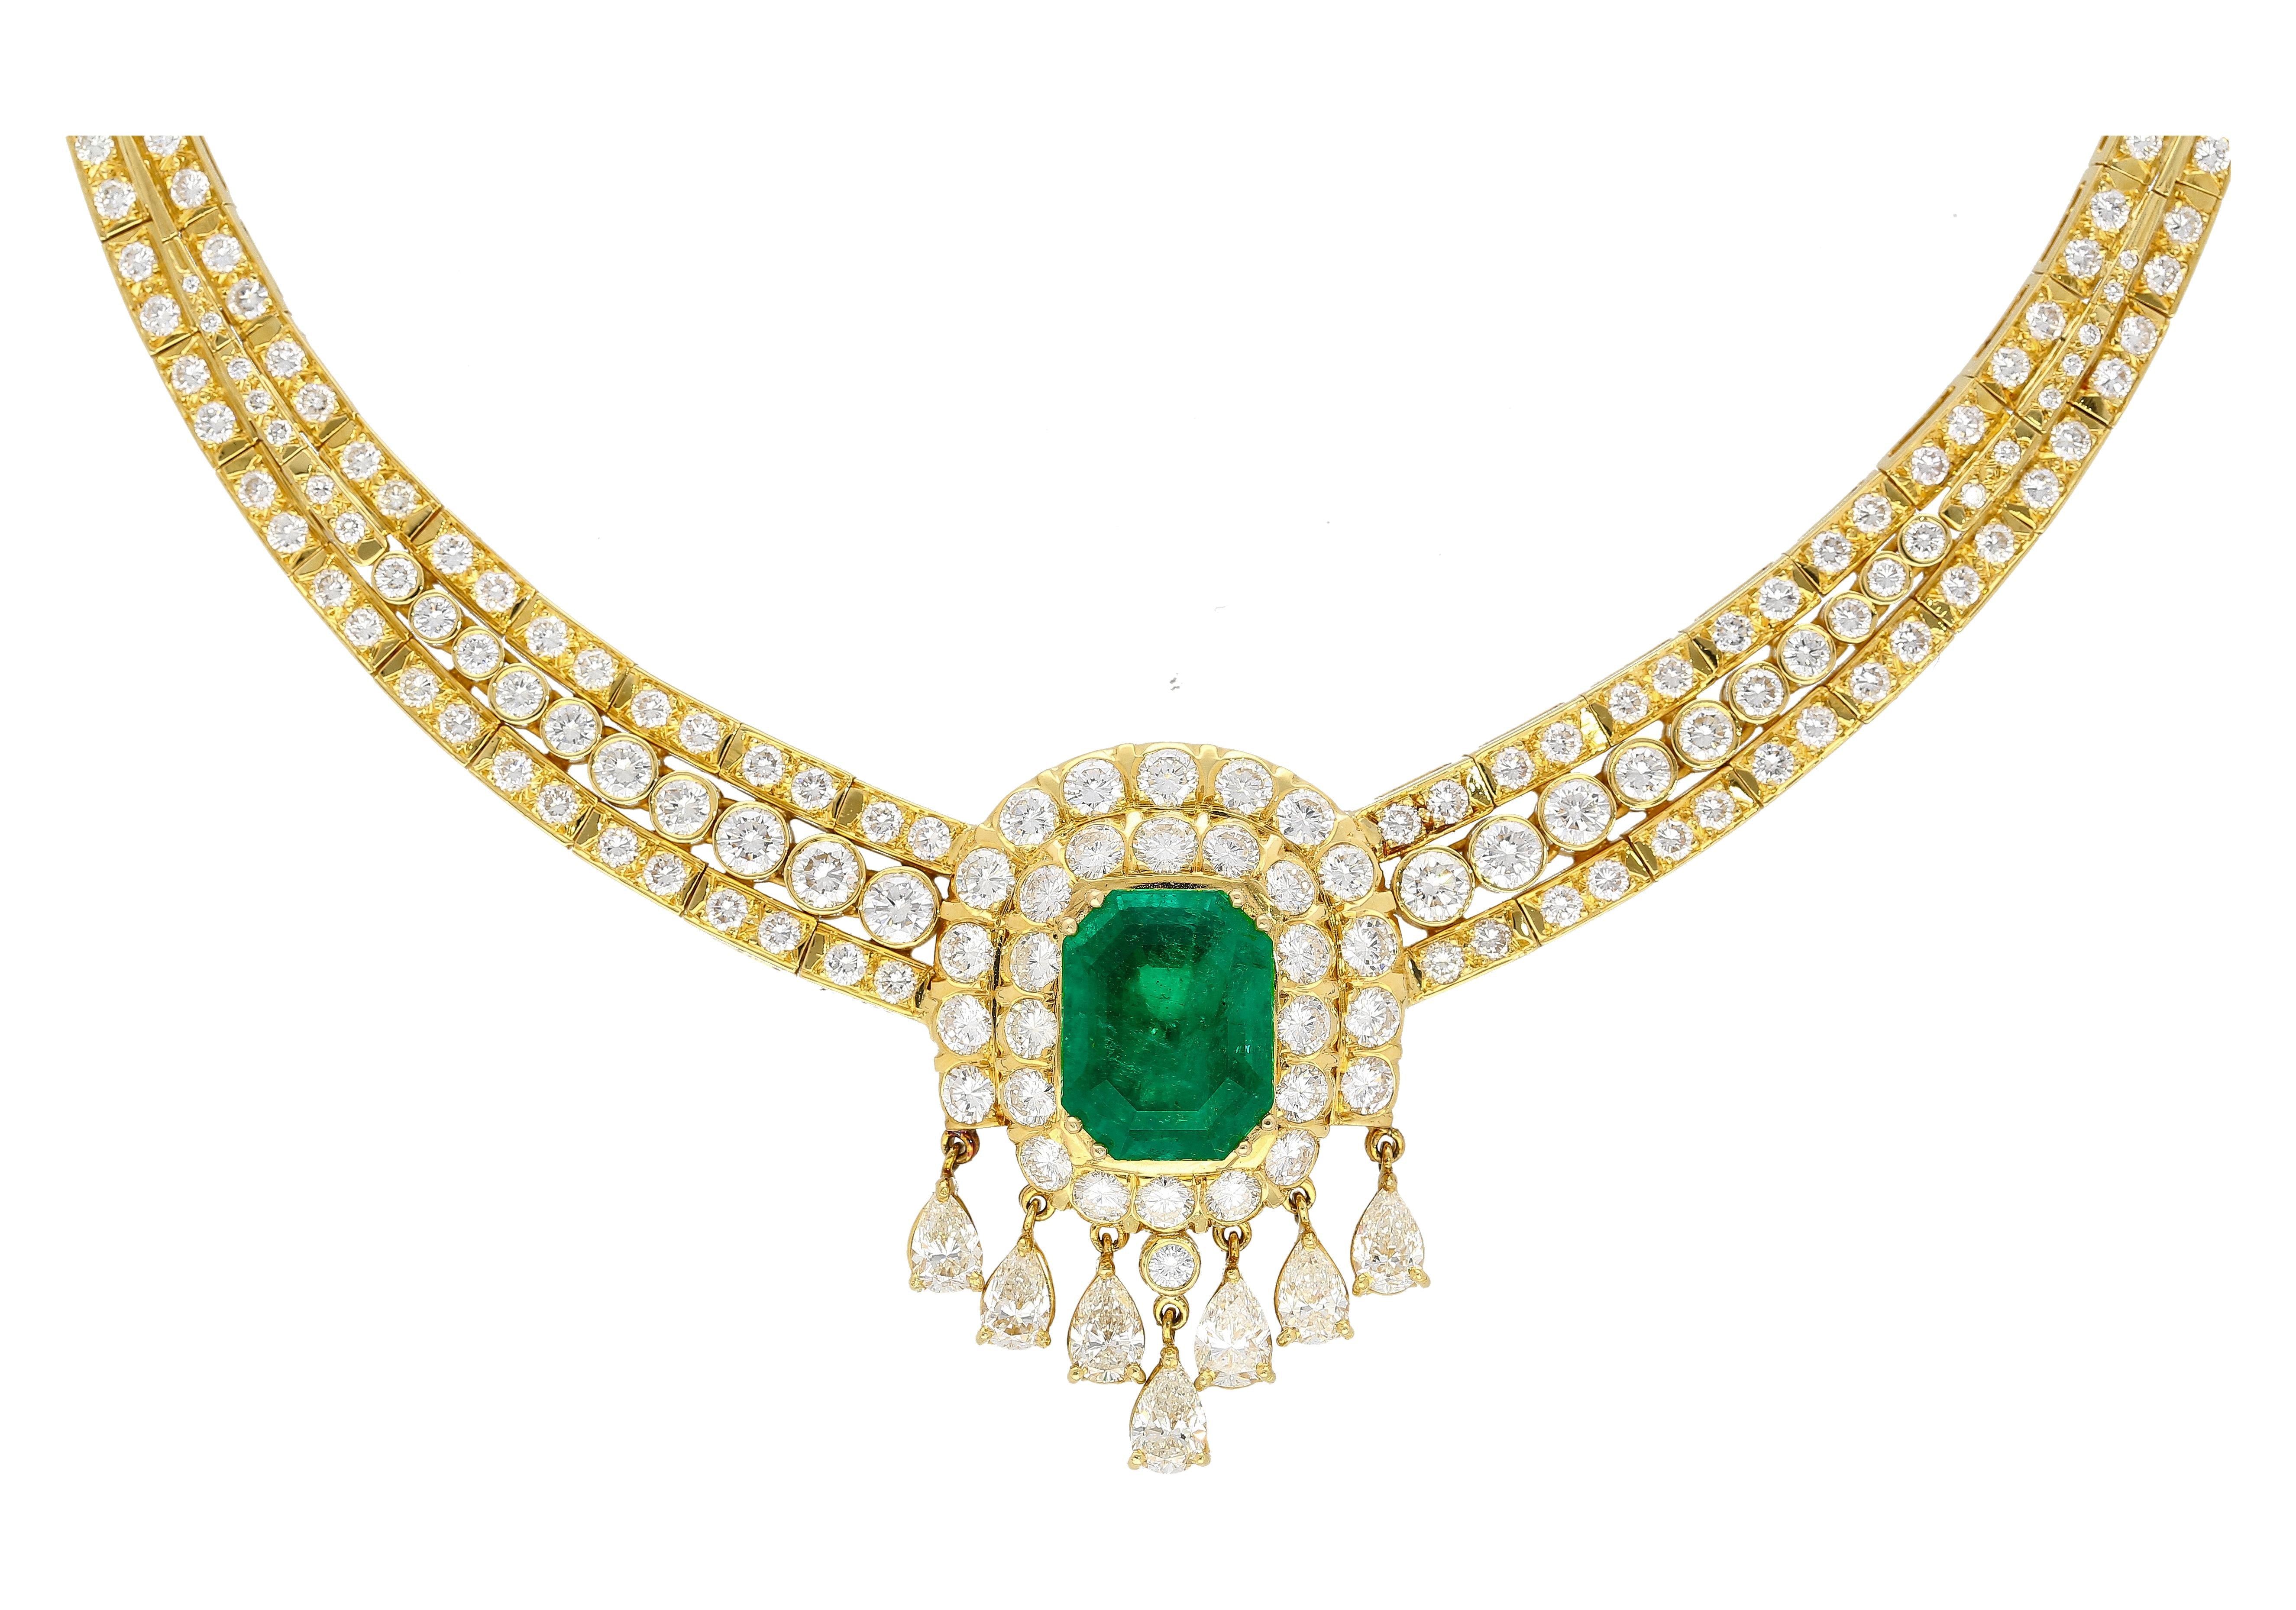 8.12 Carat Colombian Emerald & Diamond Chandelier Regal Choker Necklace in 18k